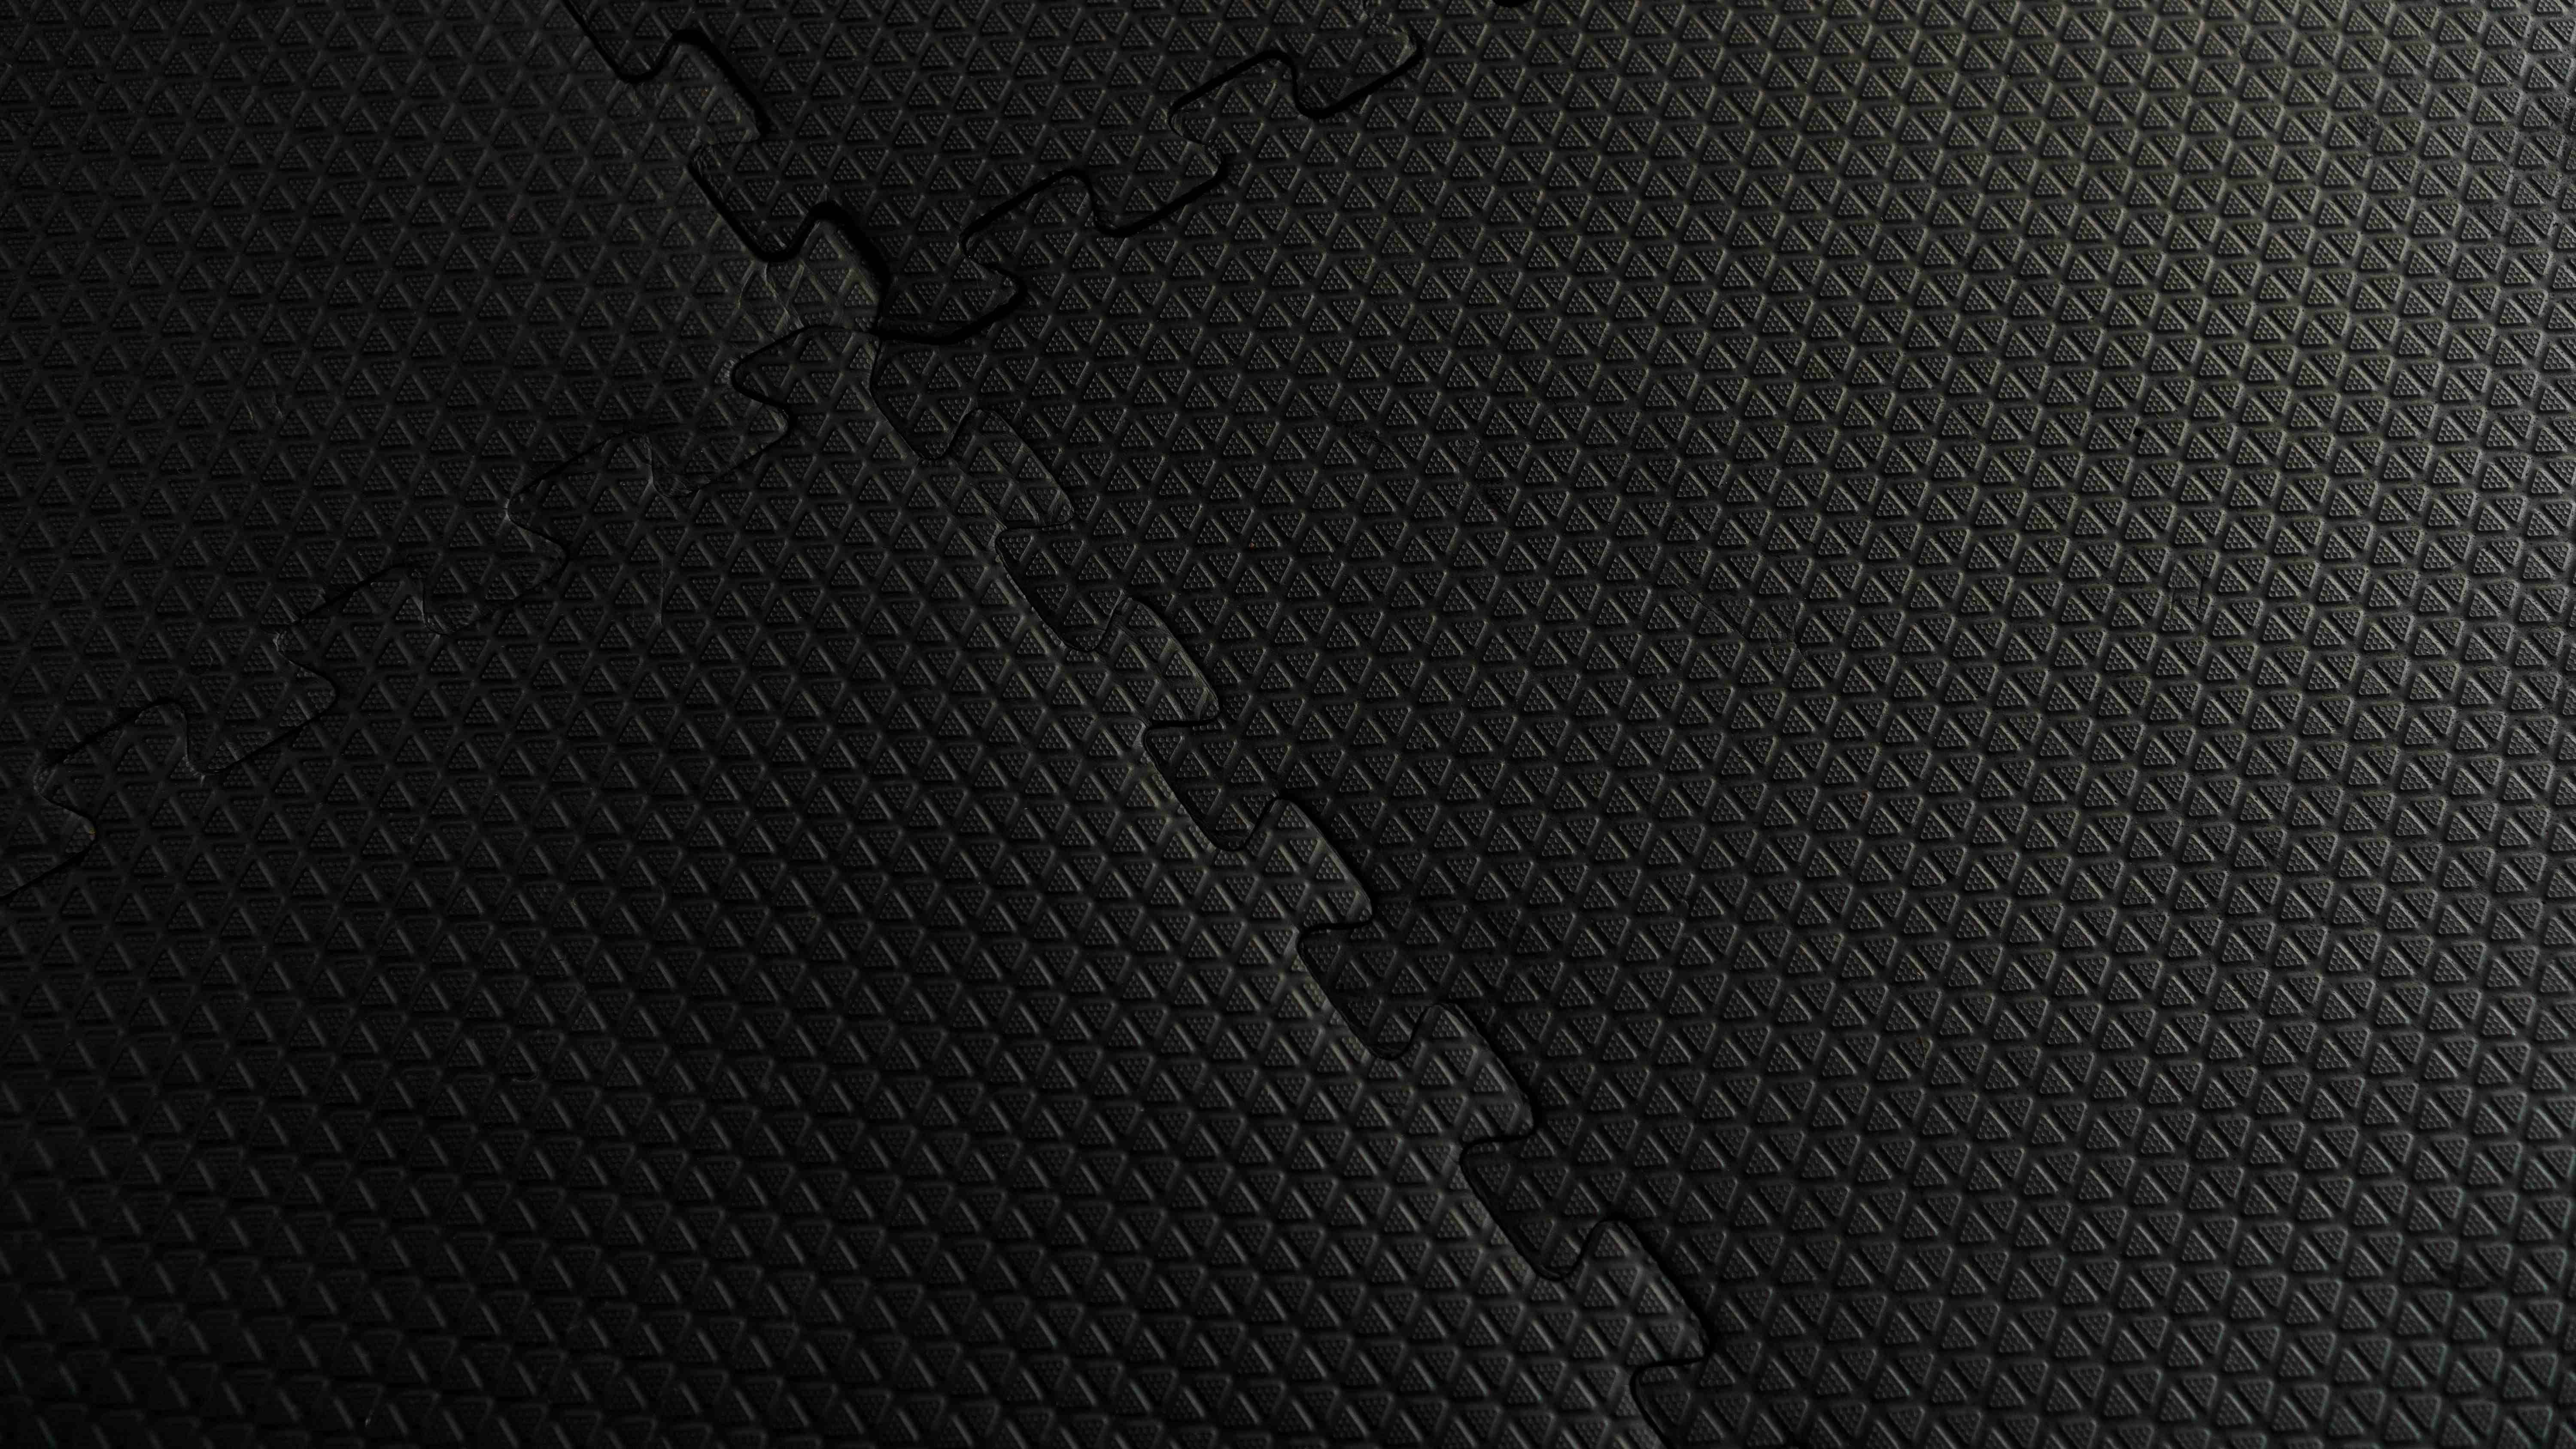 Mottez tapis anti-vibration 62x62 cm mousse